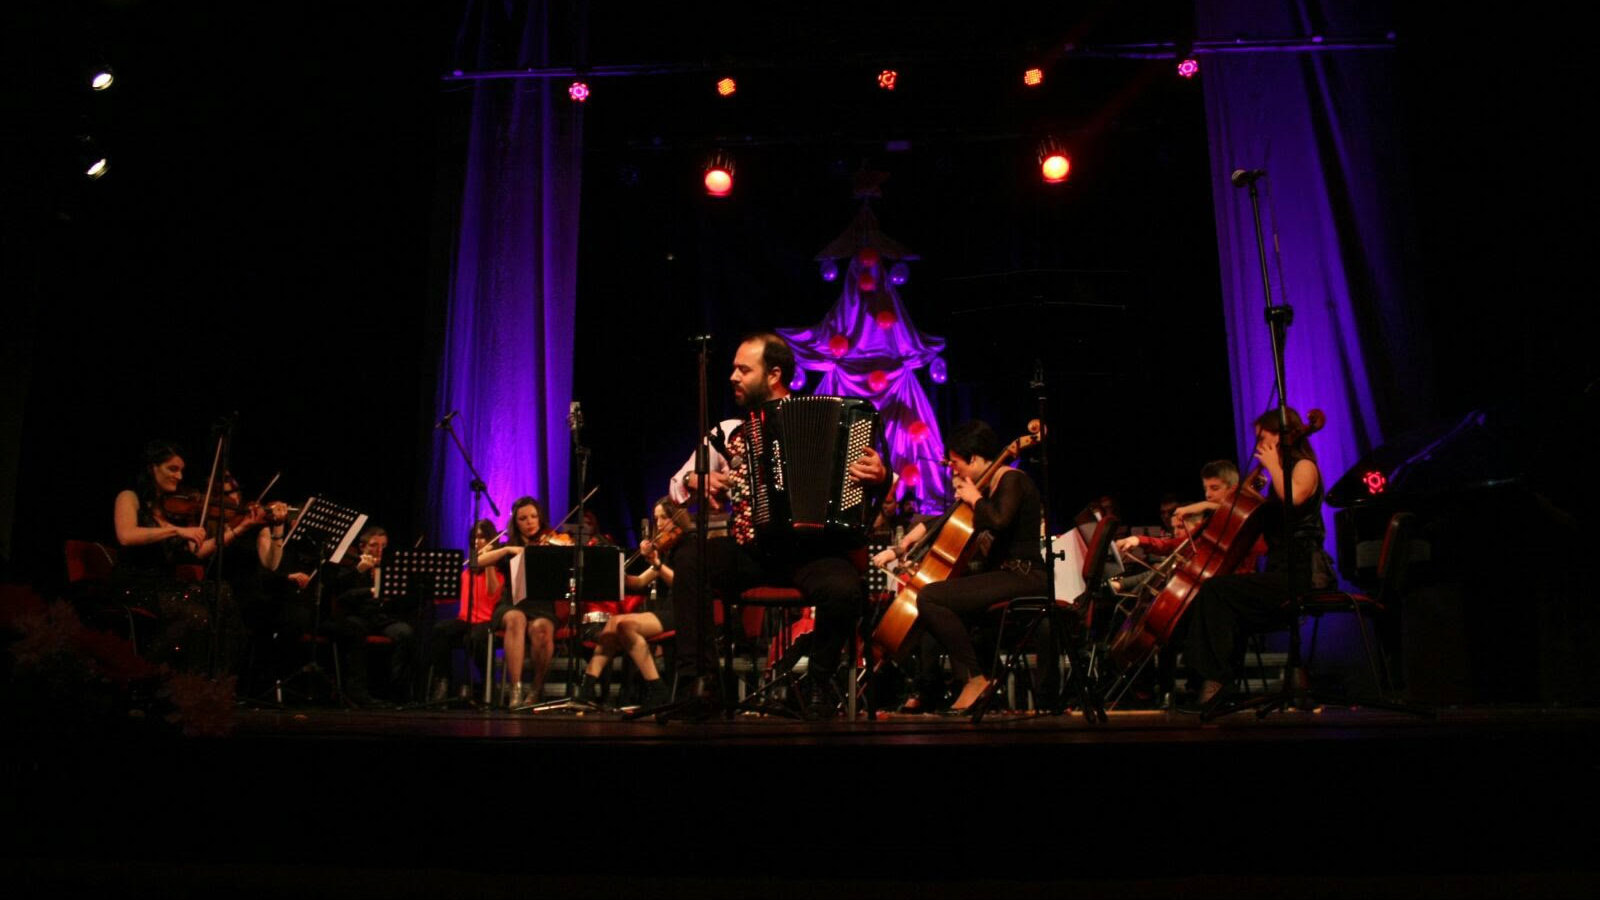 Novogodišnji koncert orkestra "Gvardija" u Požarevcu 25. decembra 1